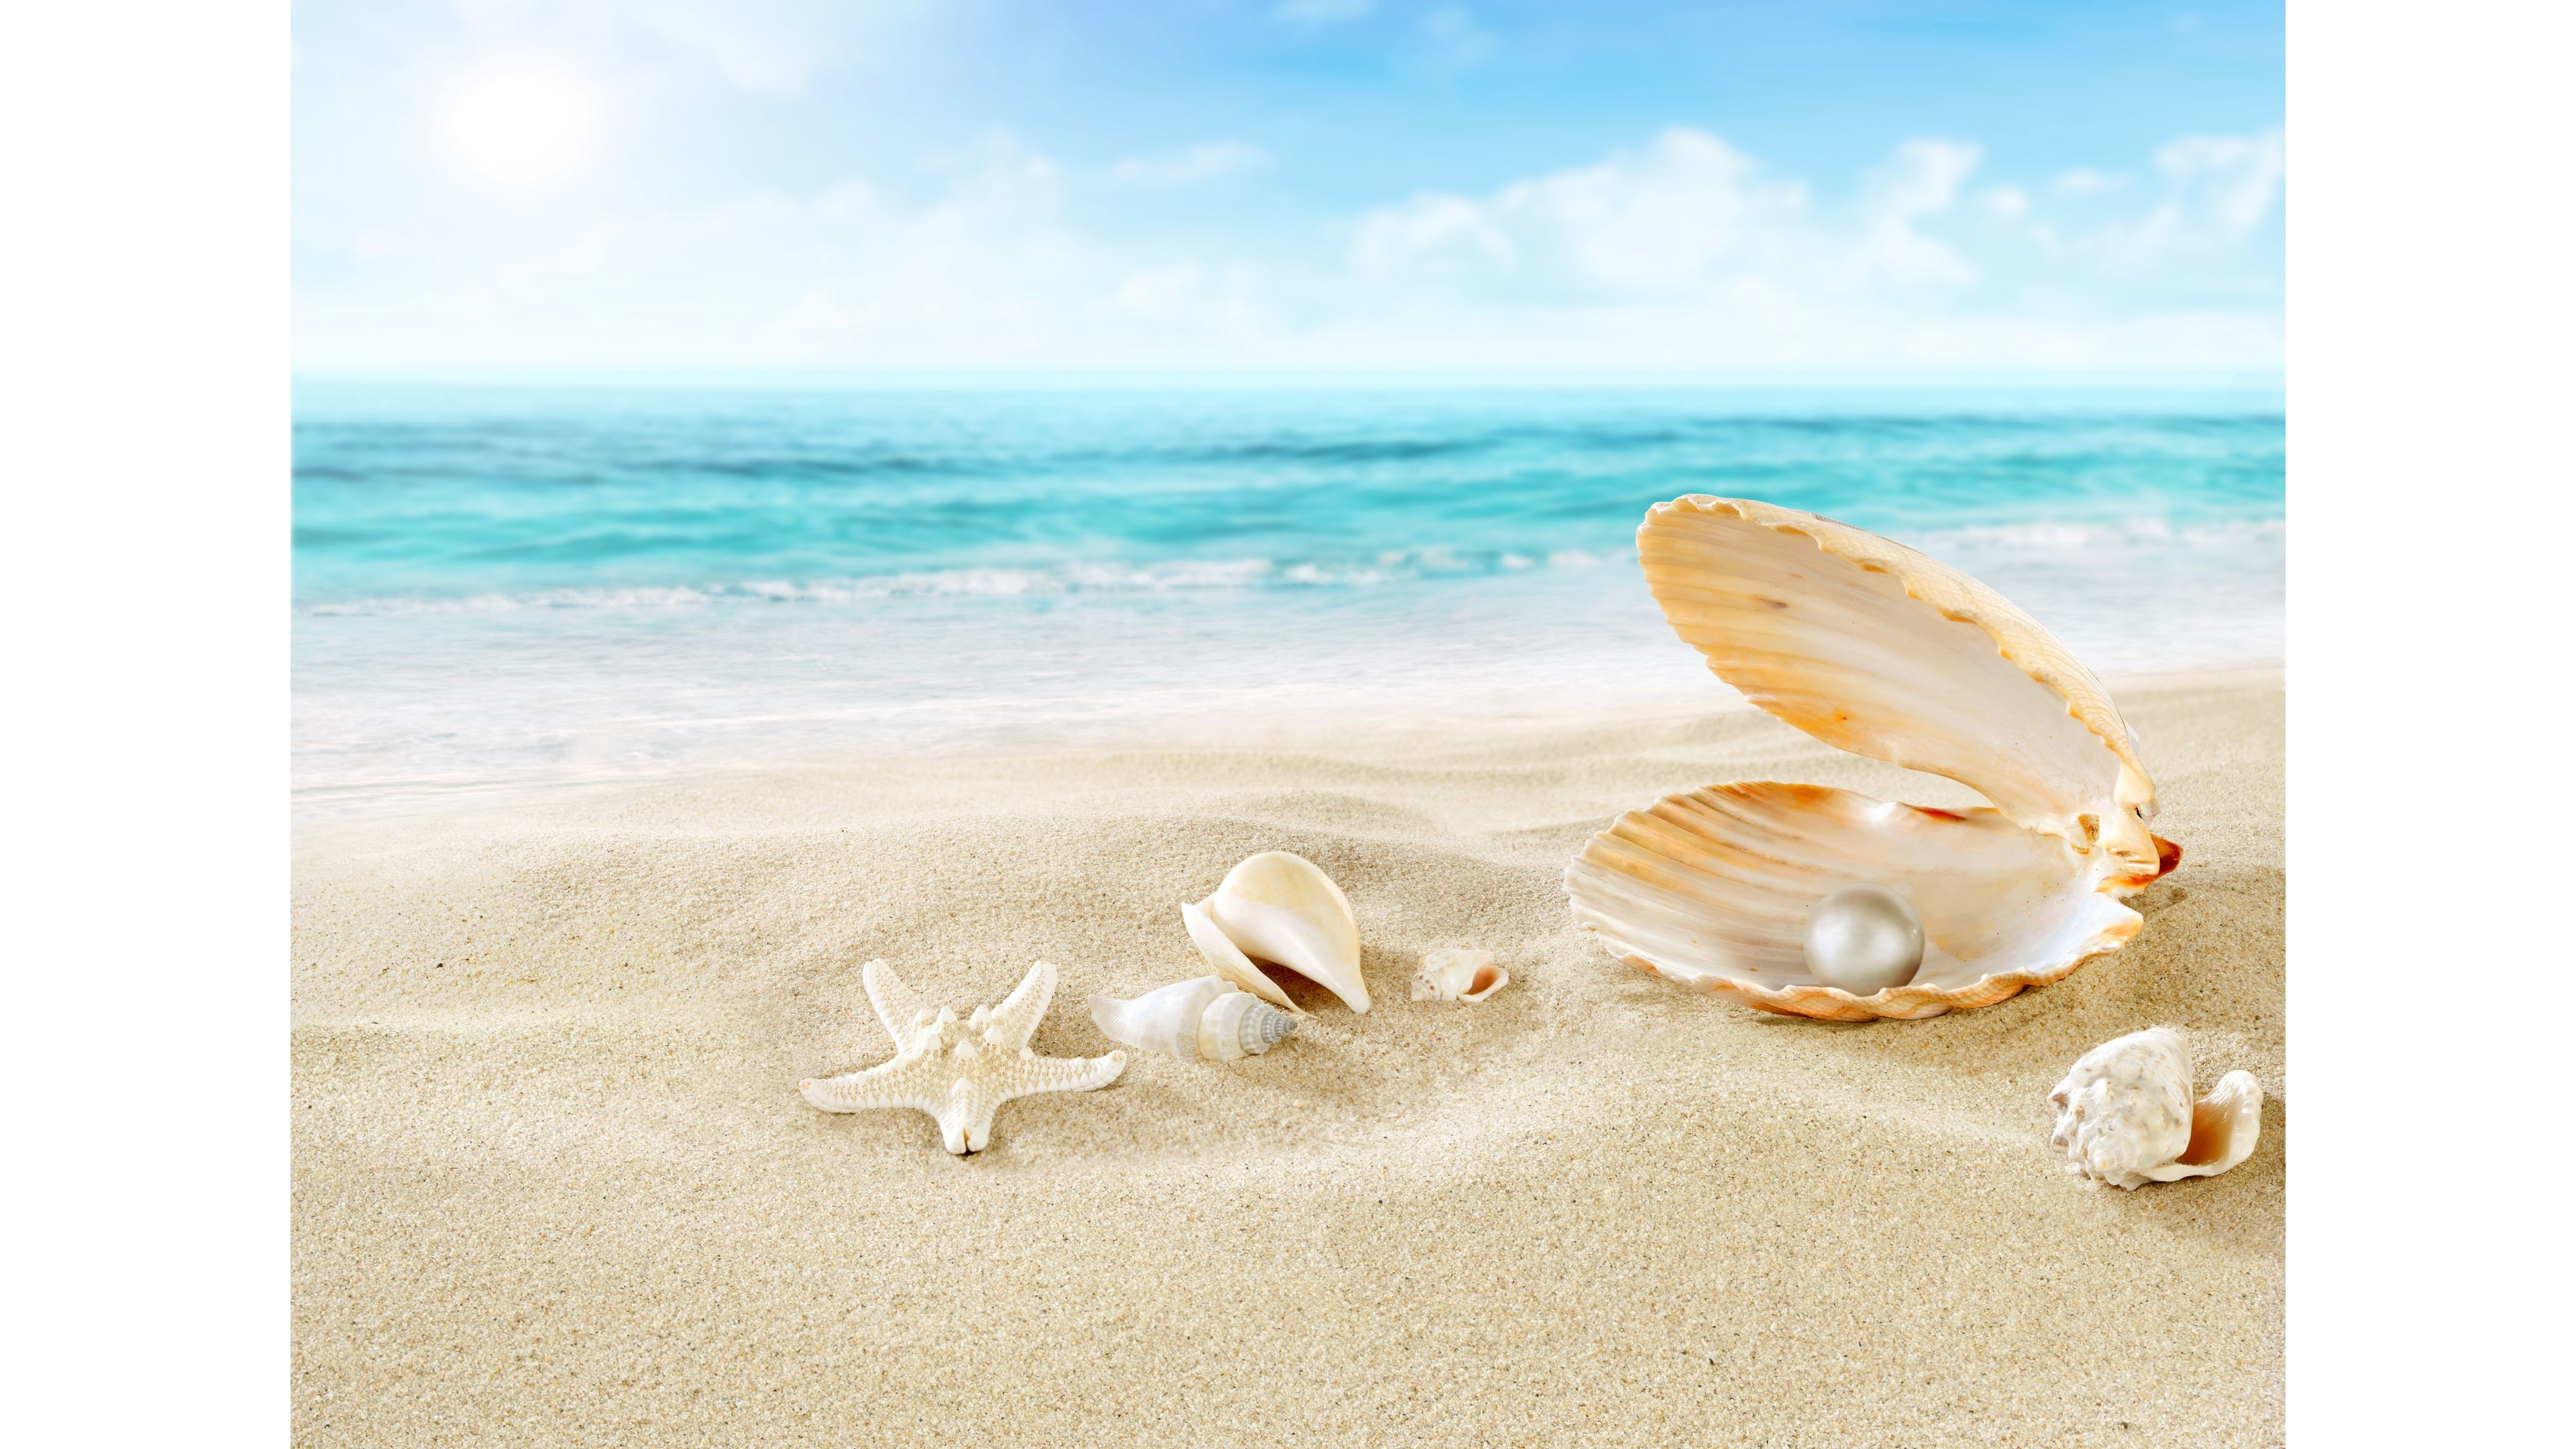 3840x2160, Seashell And Pearl Beach 4k Wallpaper 
 - Beach Seashell With Pearl - HD Wallpaper 